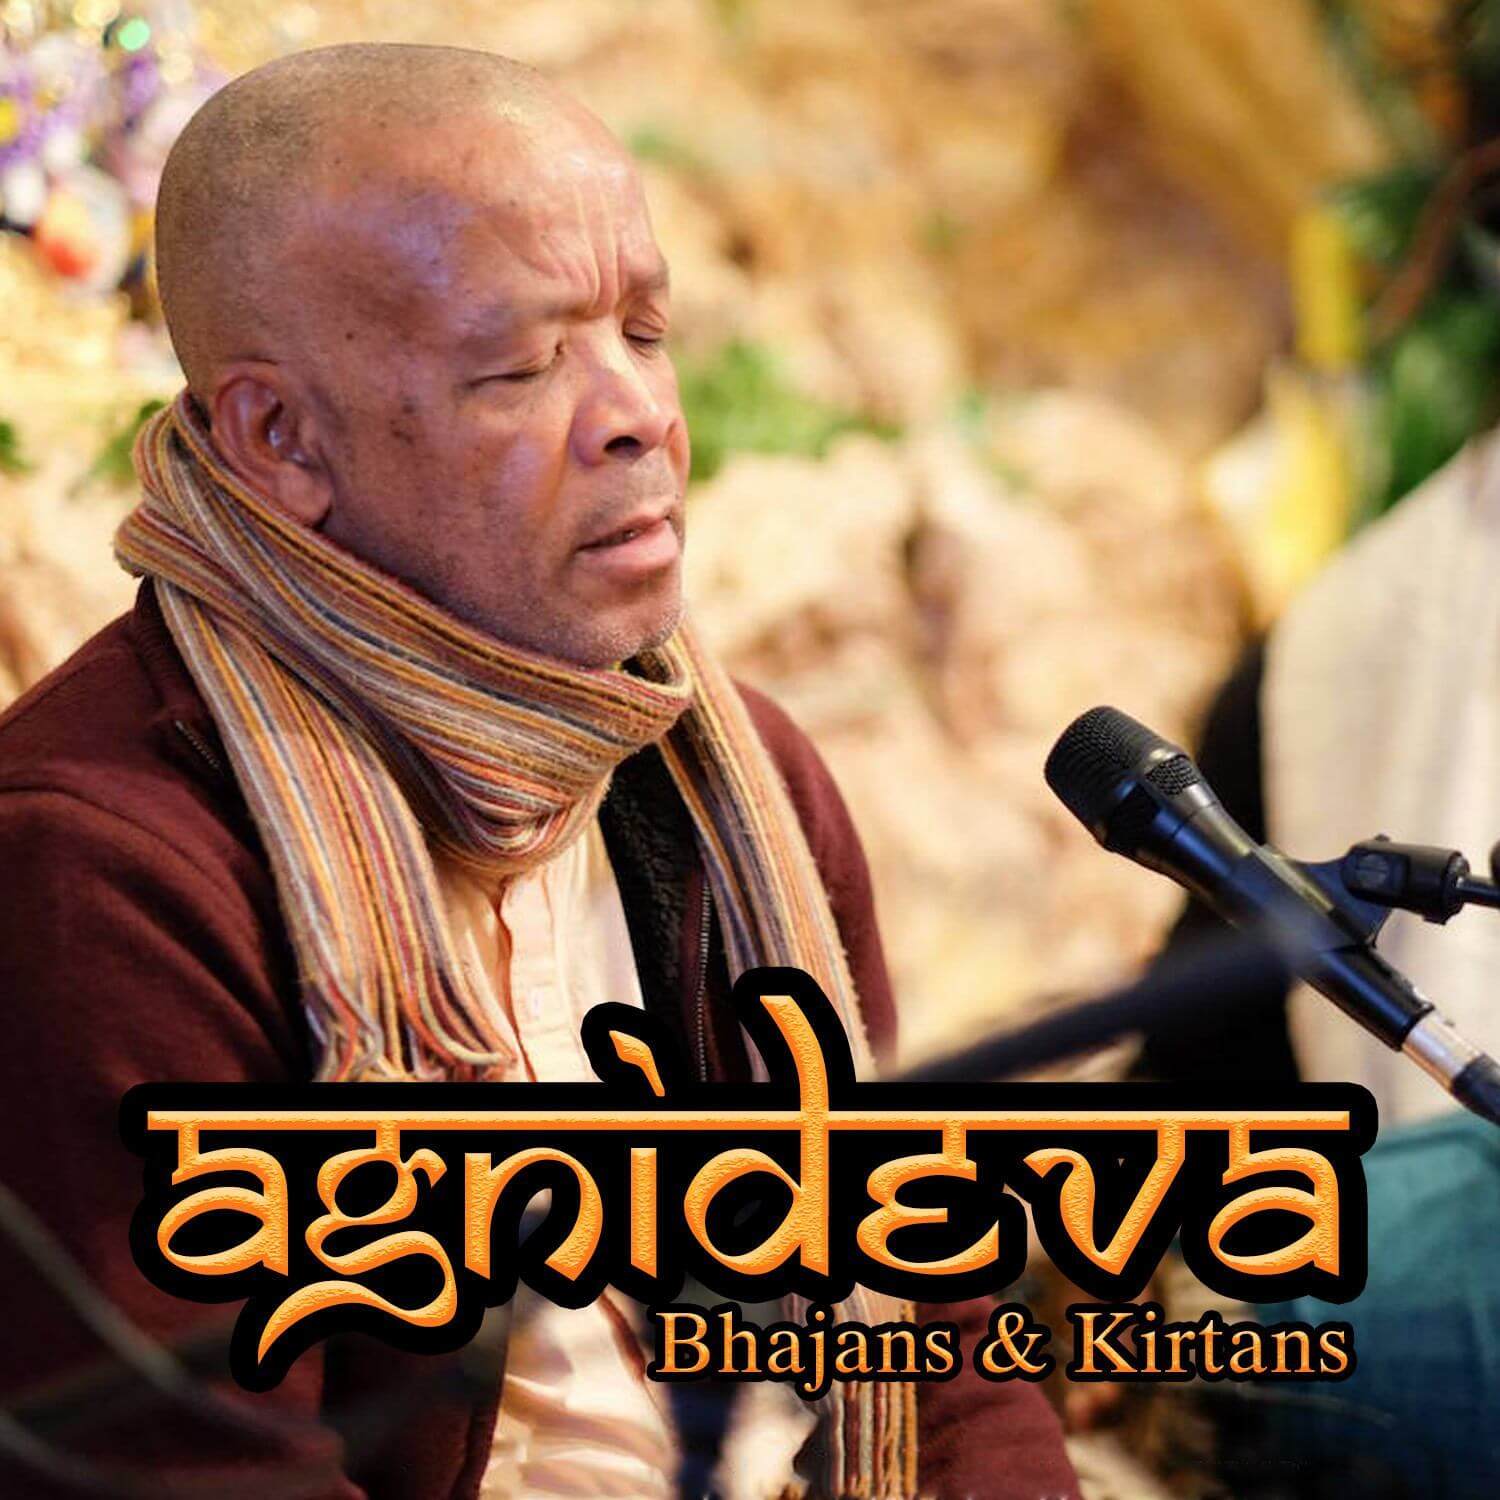 Agnideva Bhajans & Kirtans Download - Touchstone Media